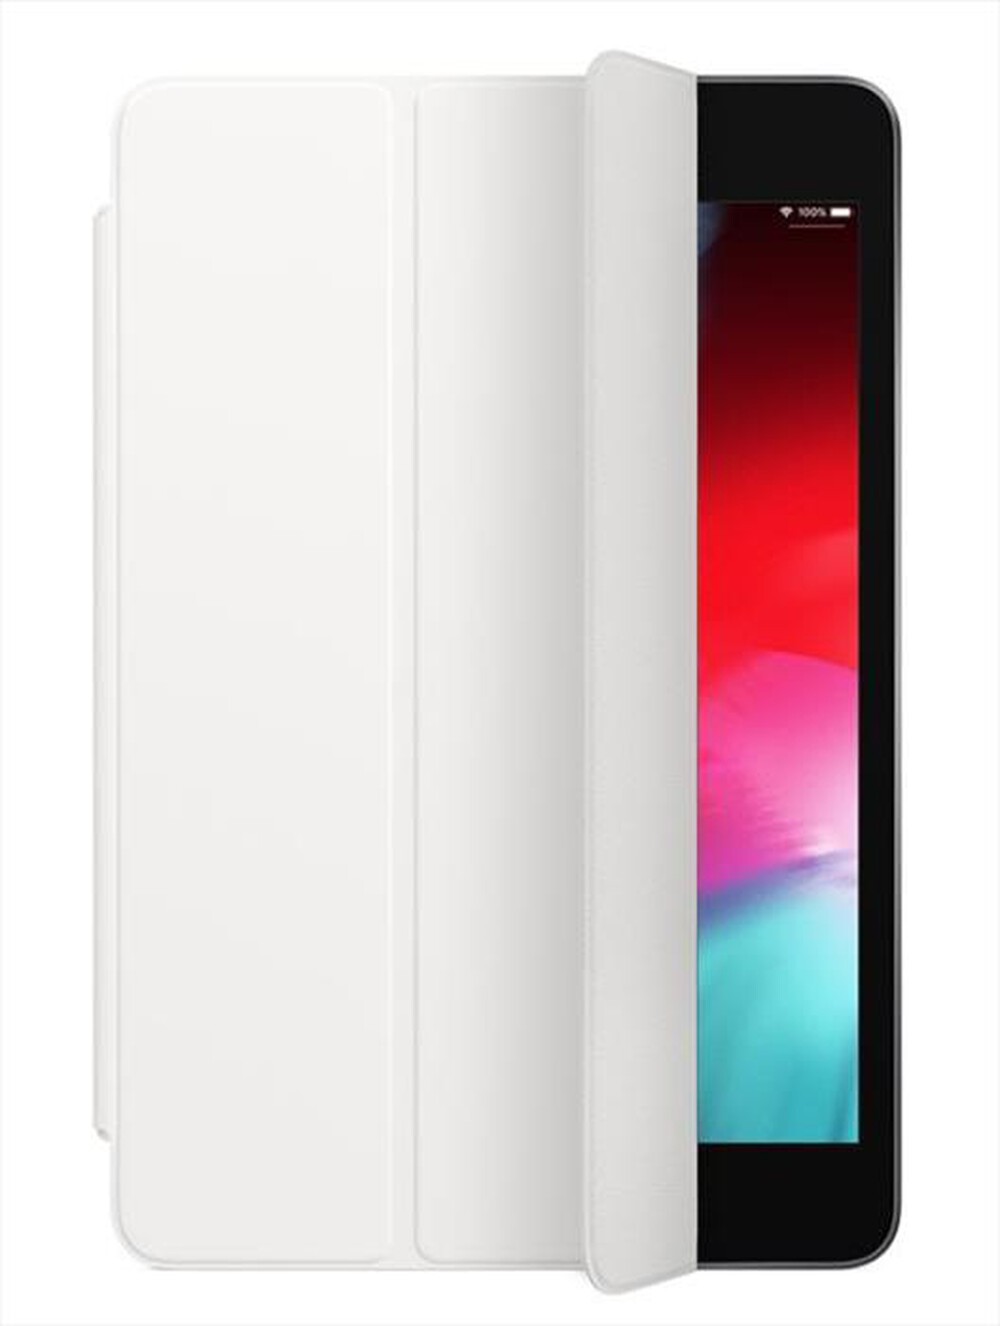 "APPLE - Smart Cover per iPad Mini (versione 2019) - Bianco"